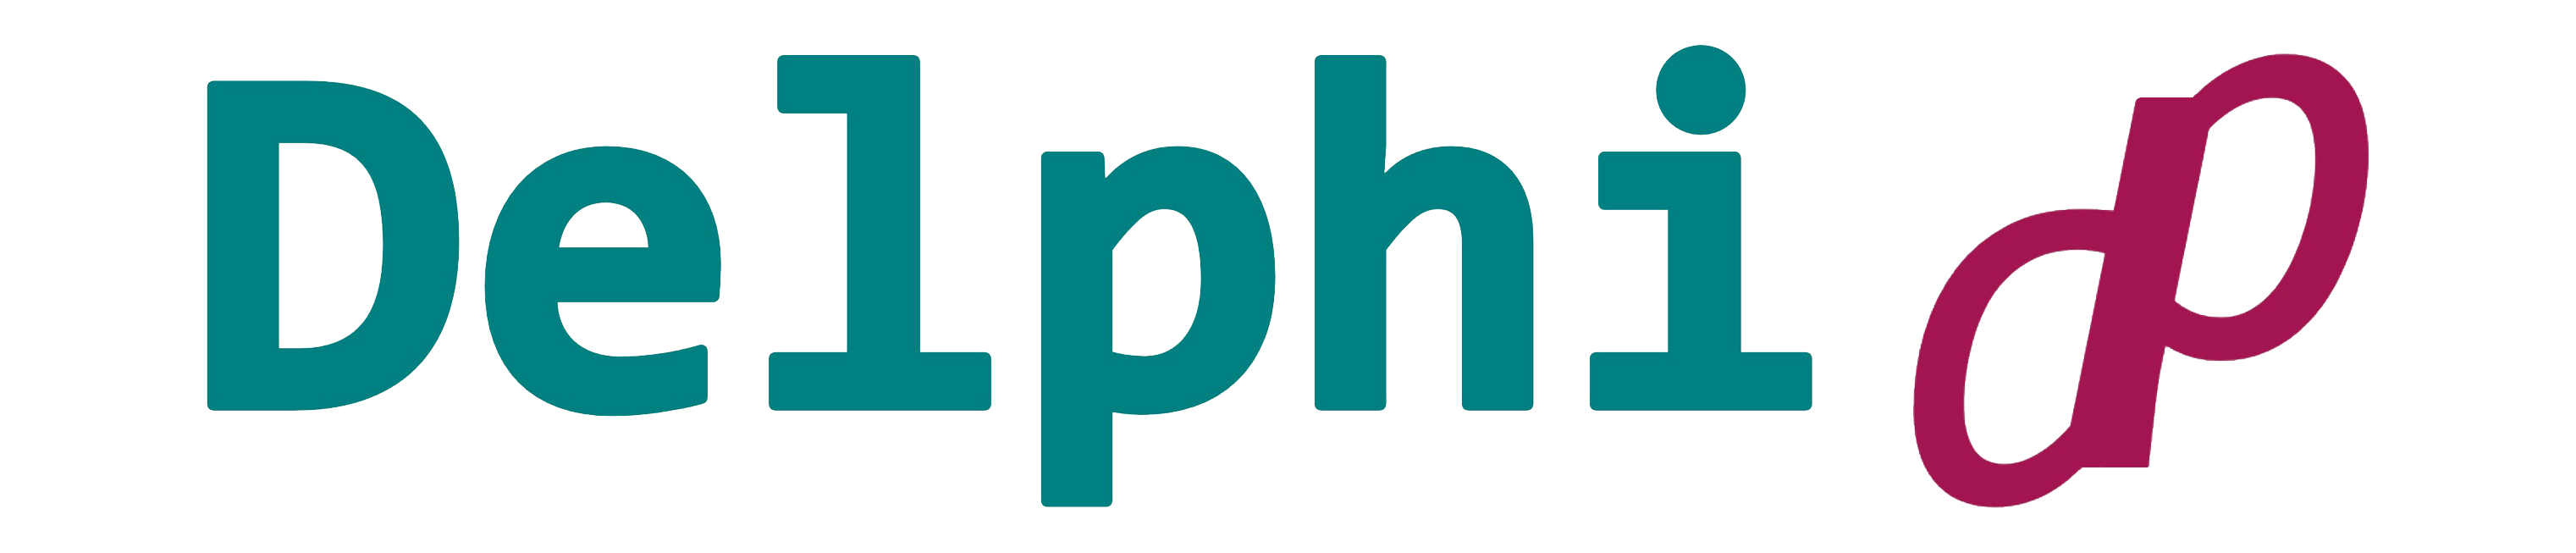 Delphi DP LMS logo